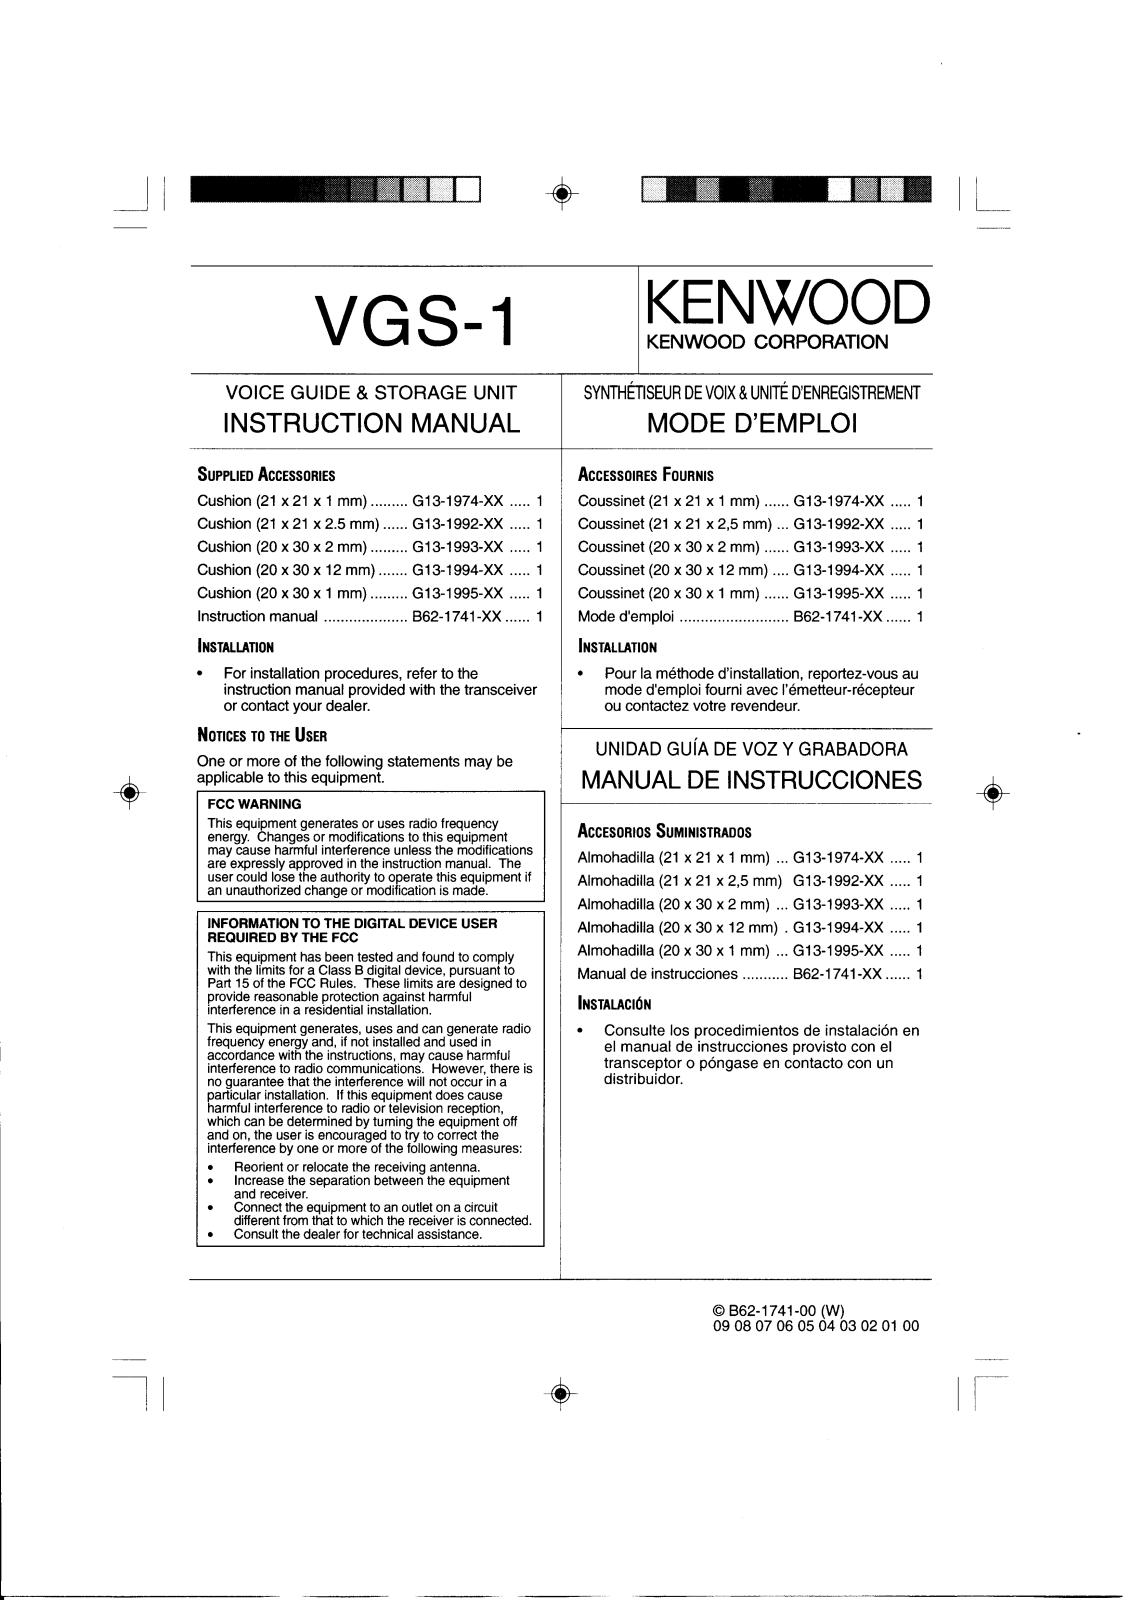 Kenwood VGS-1 User Manual